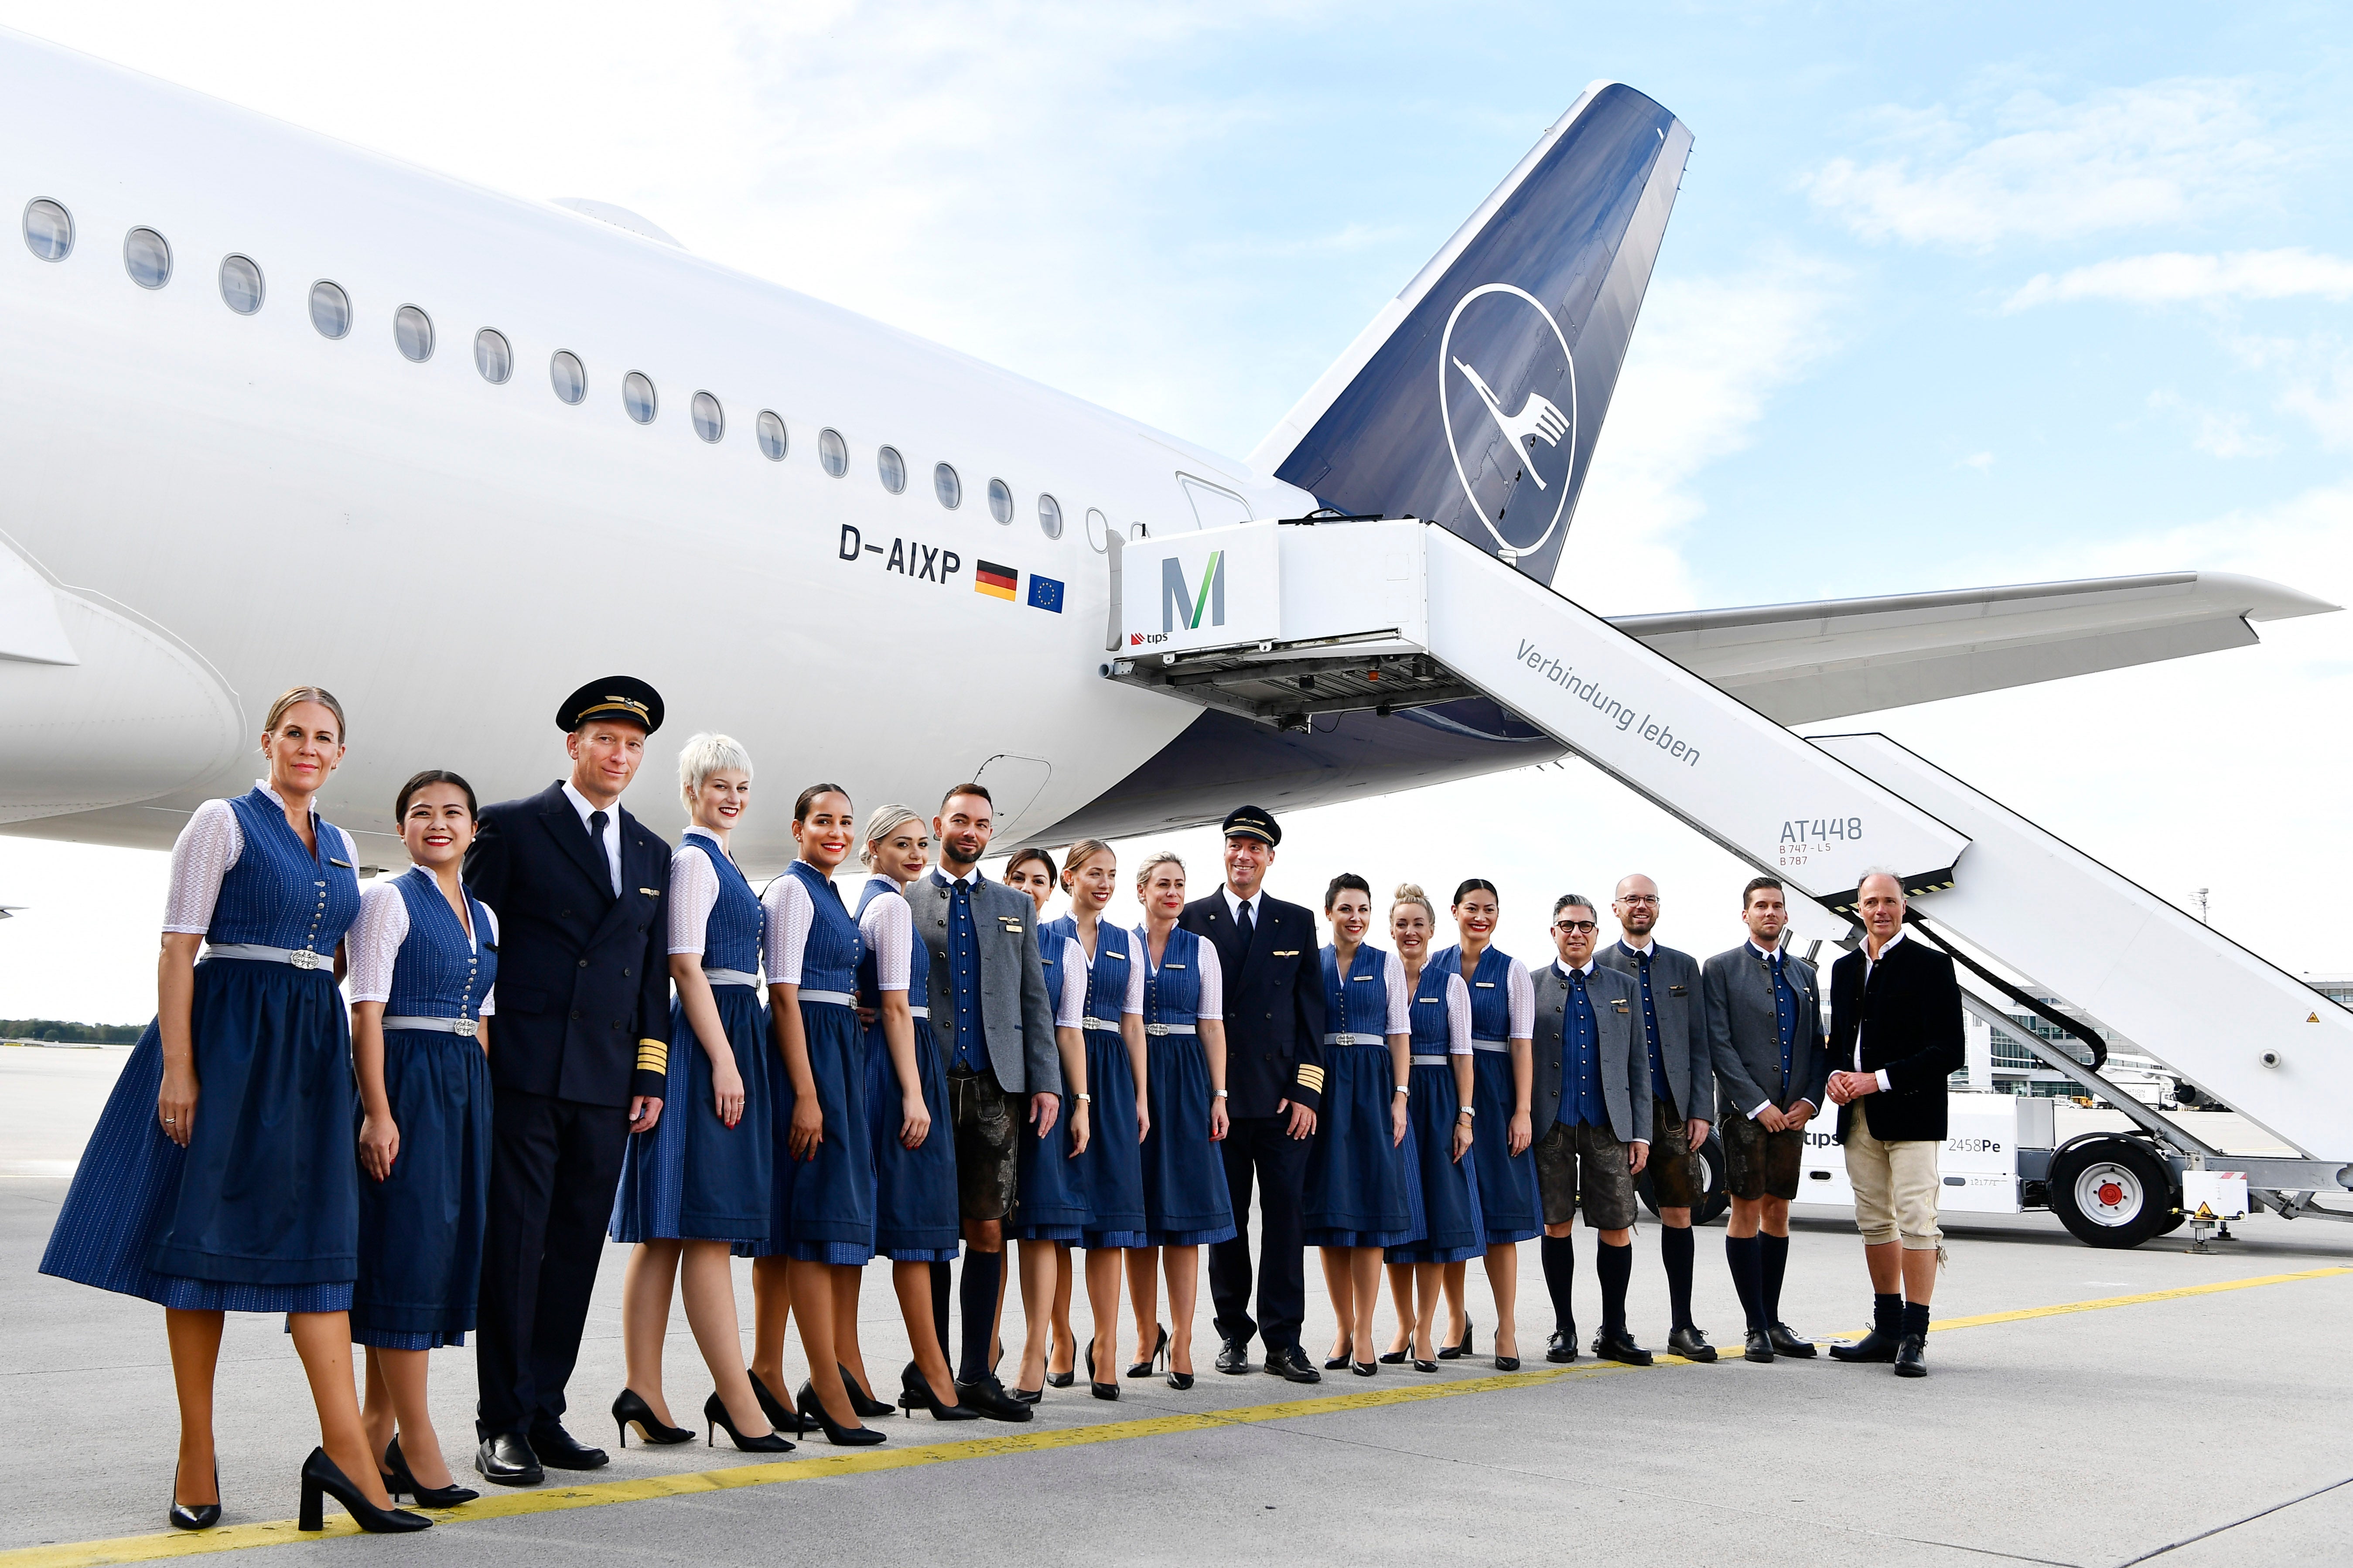 With Munich Oktoberfest comes the Lufthansa dirndl crew